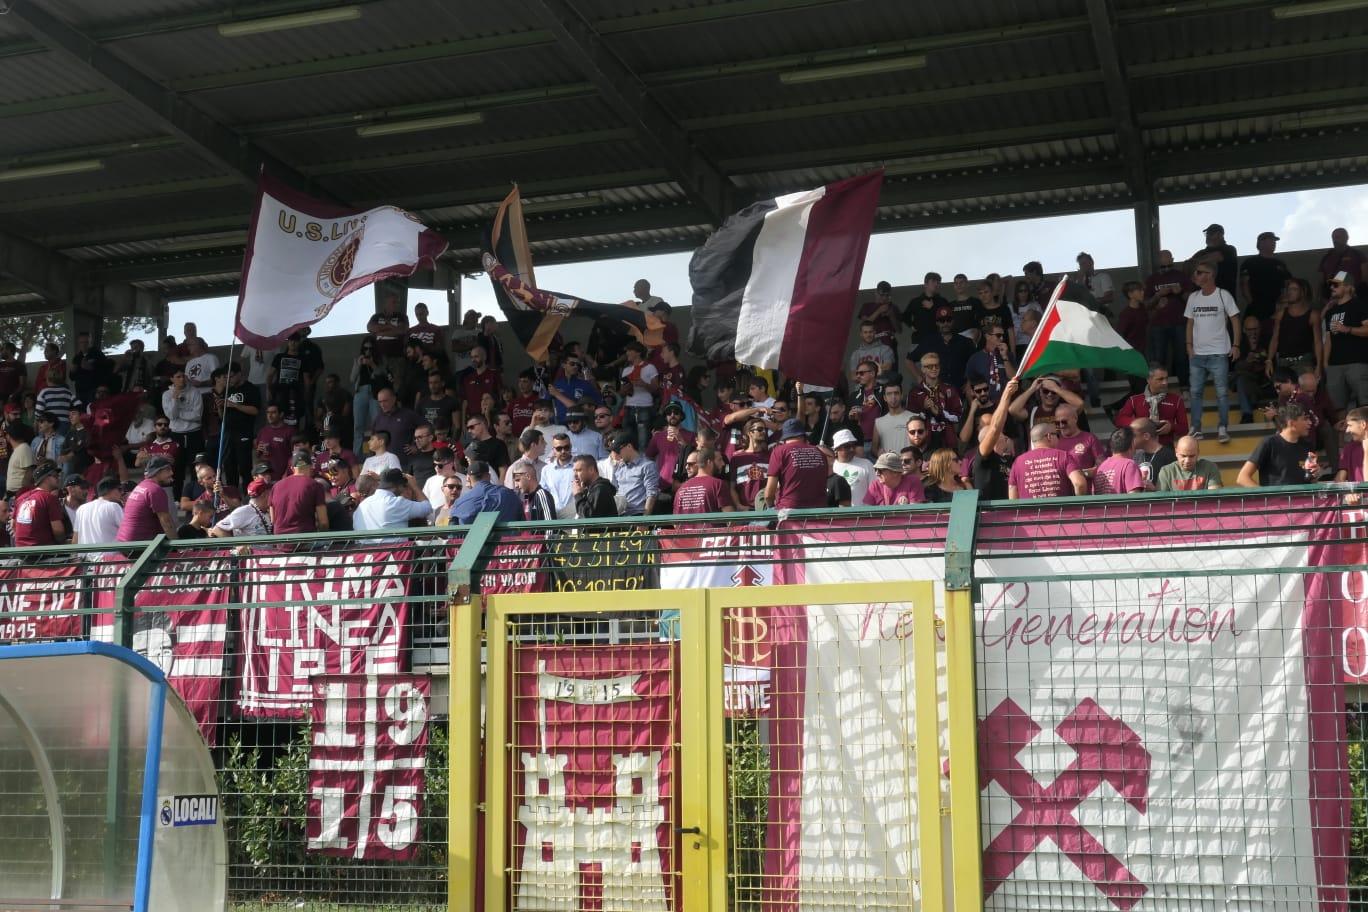 Real Forte Querceta-Livorno 0-1, la cronaca della partita in diretta web